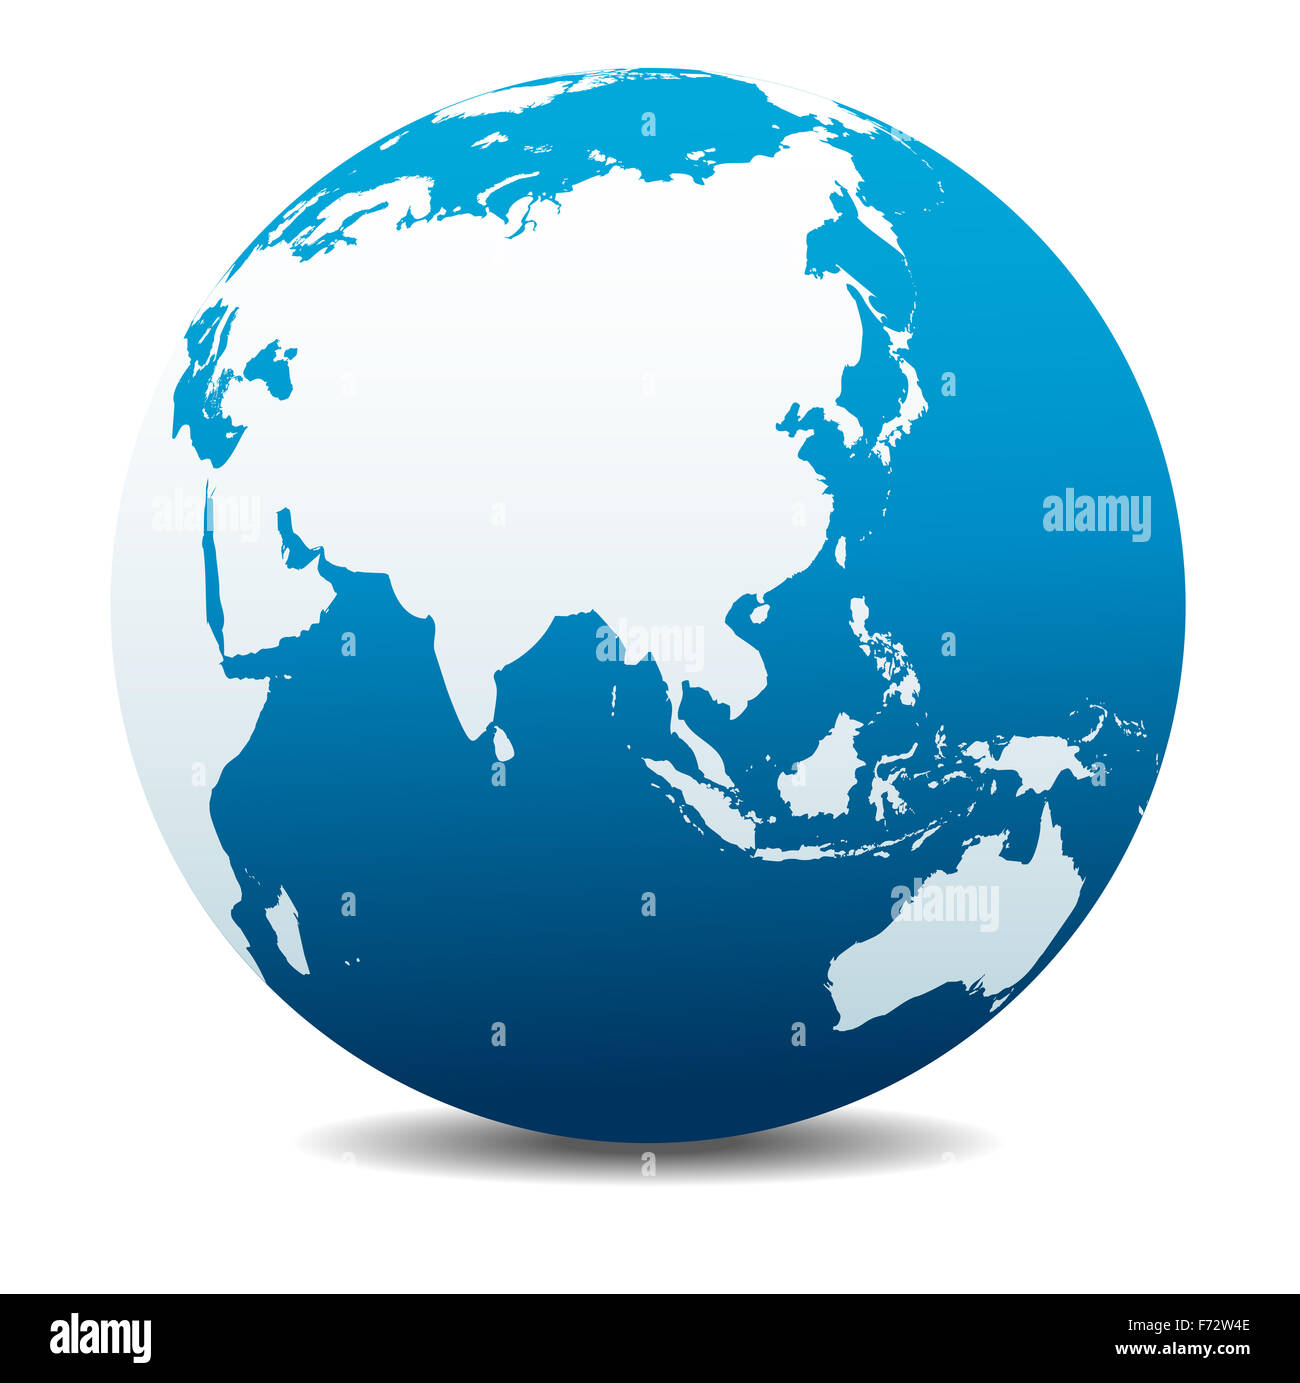 La Chine et l'Asie, monde global Banque D'Images